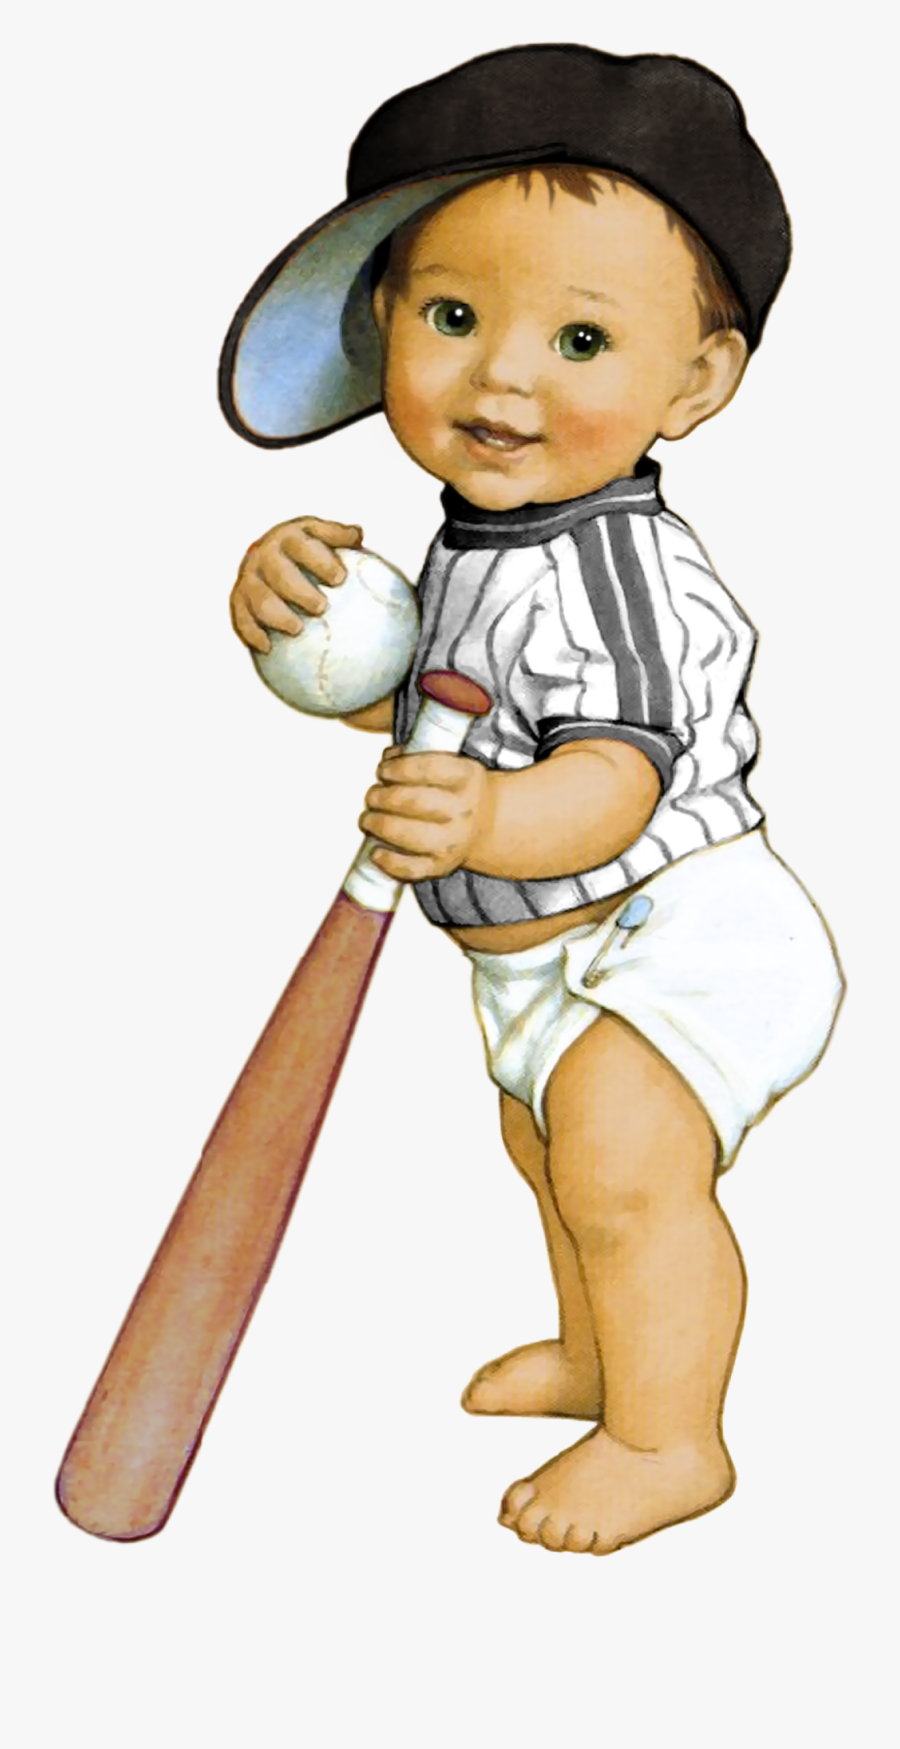 Baseball Chalkboard Boy Baby Shower Invitations - Baby Shower Invitation Baseball Boy, Transparent Clipart